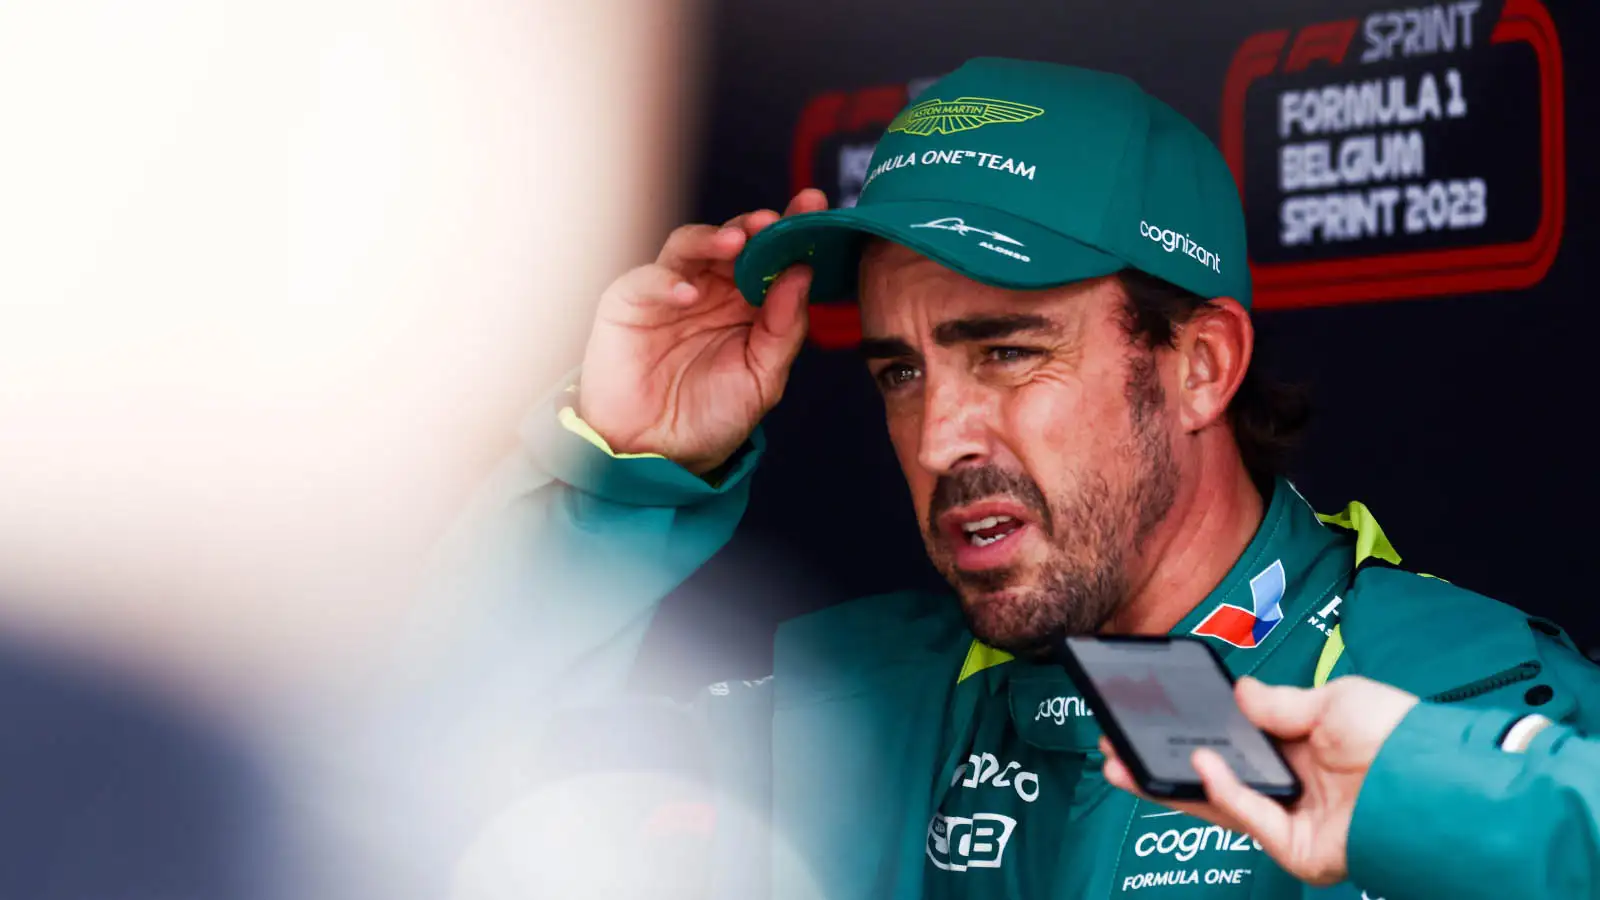 F1: Fernando Alonso wants top podium finish